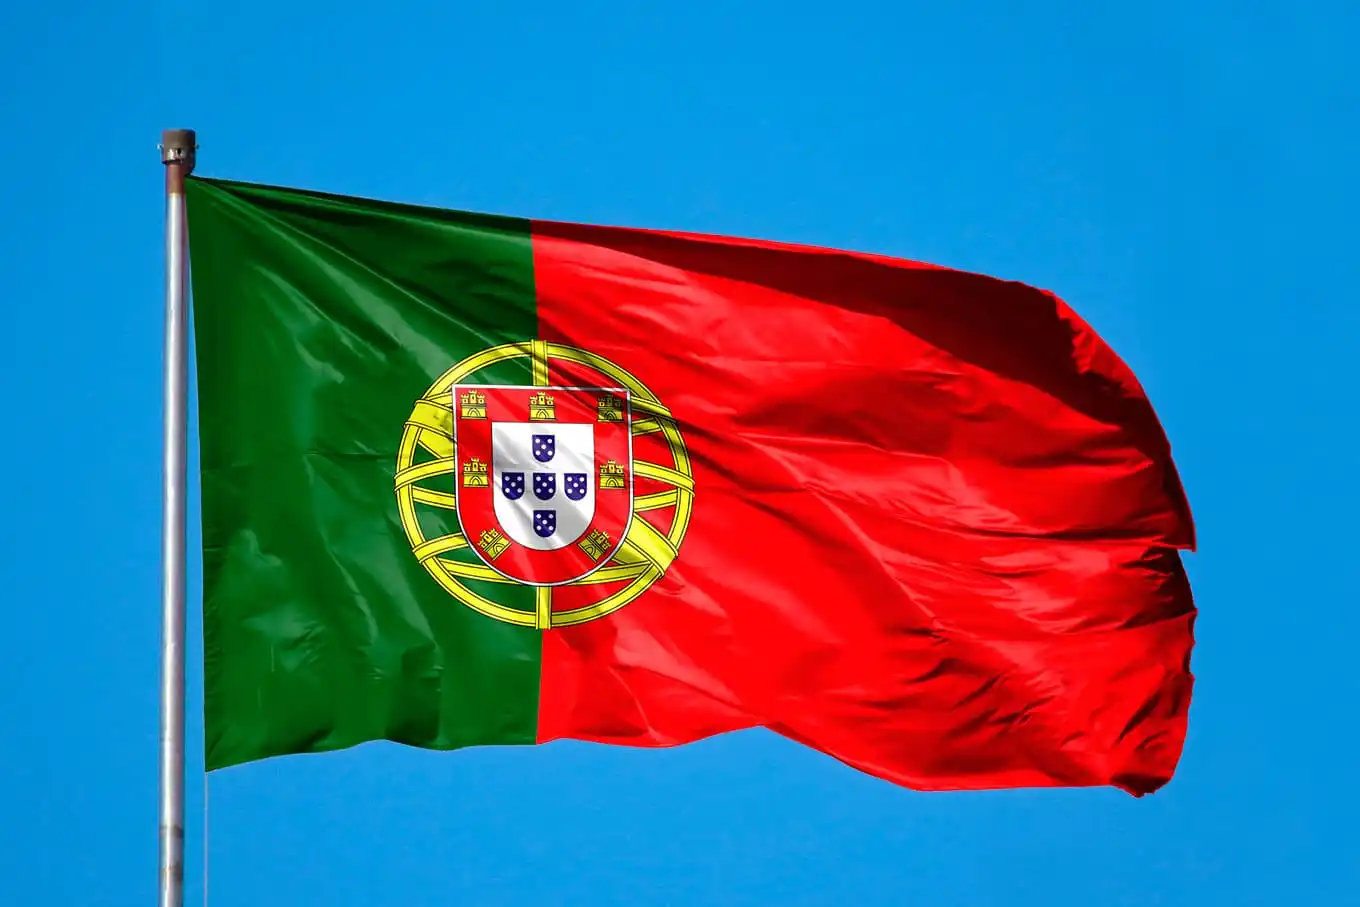 O time de Portugal sofreu a maior goleada da história da cometição, além disso, o elenco foi rebaixado e punido pela organização do torneio